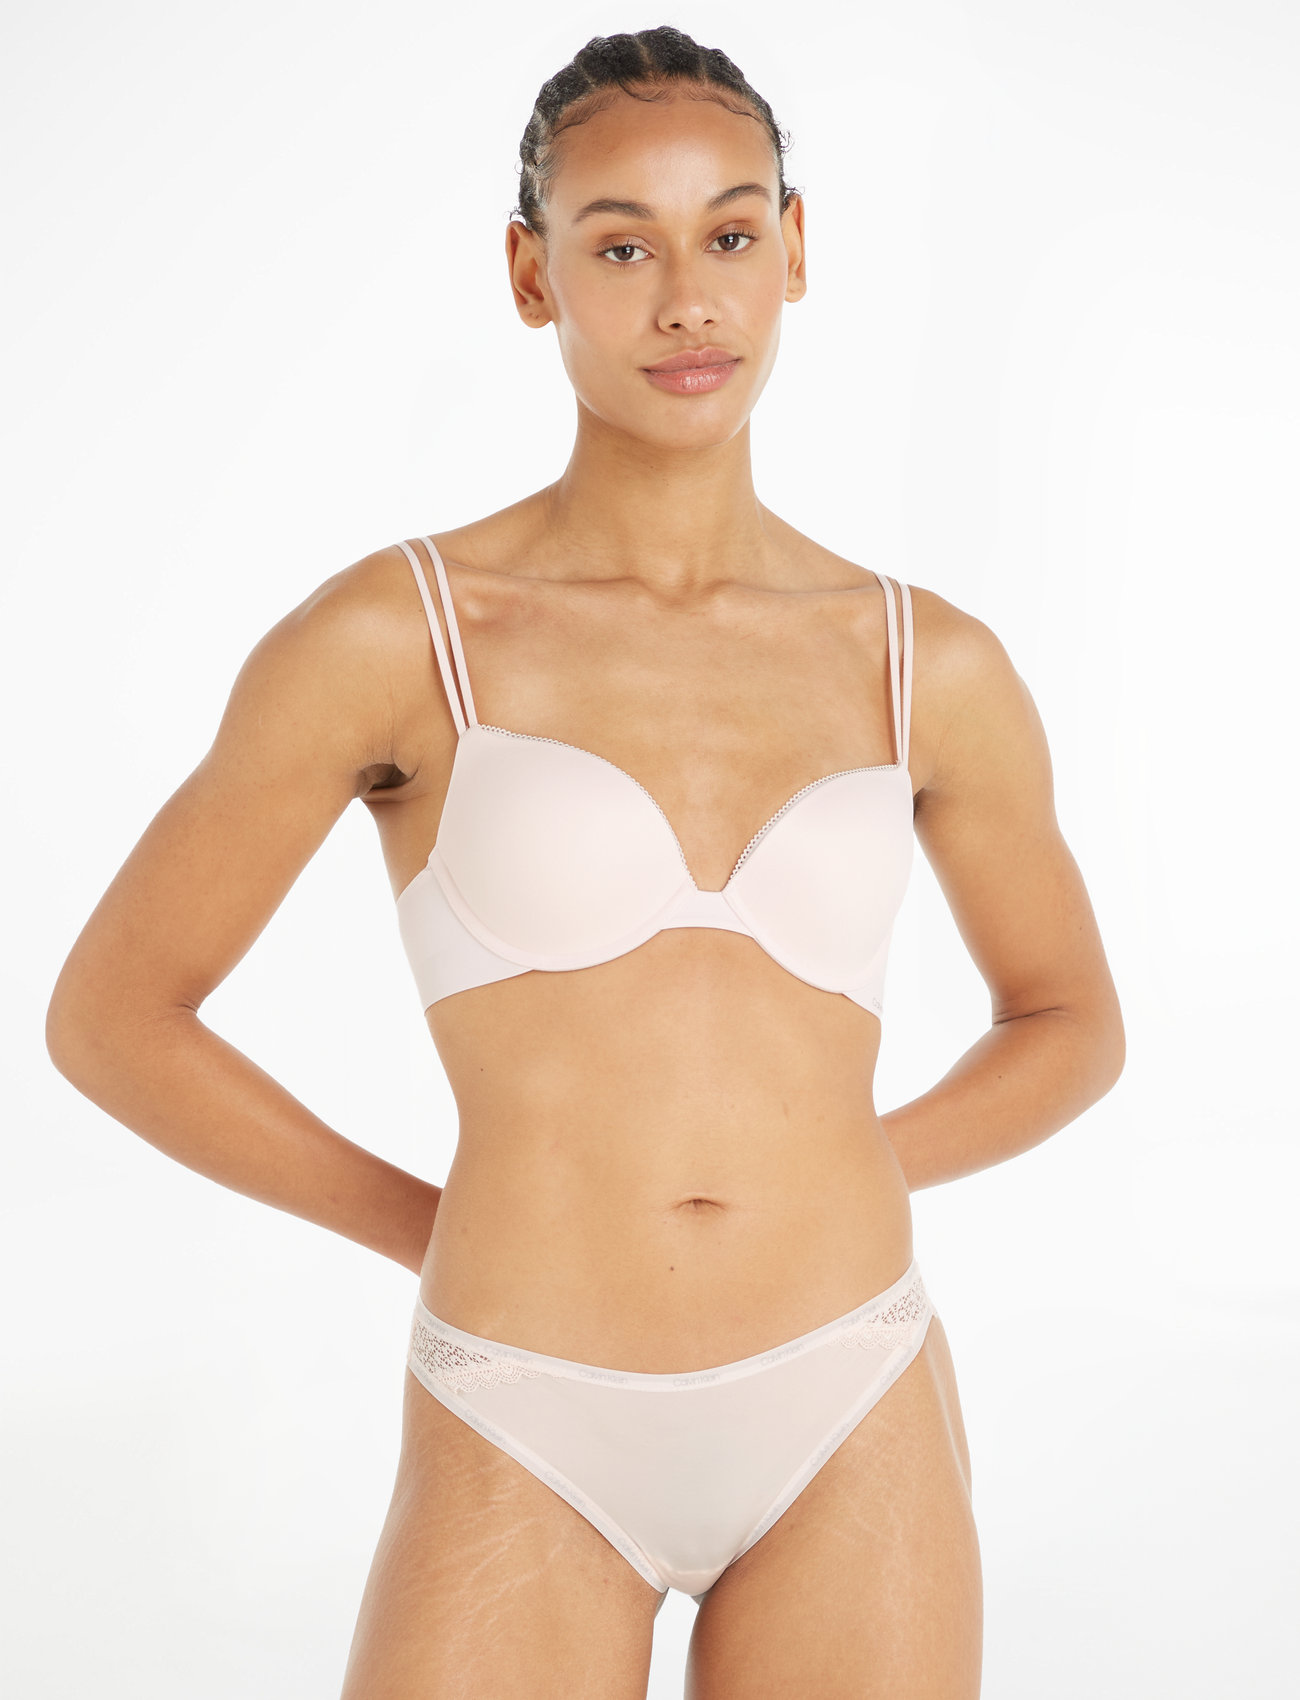 Calvin Klein Underwear, Intimates & Sleepwear, New Calvin Klein Push Up  Plunge Nude Bra Size 32a